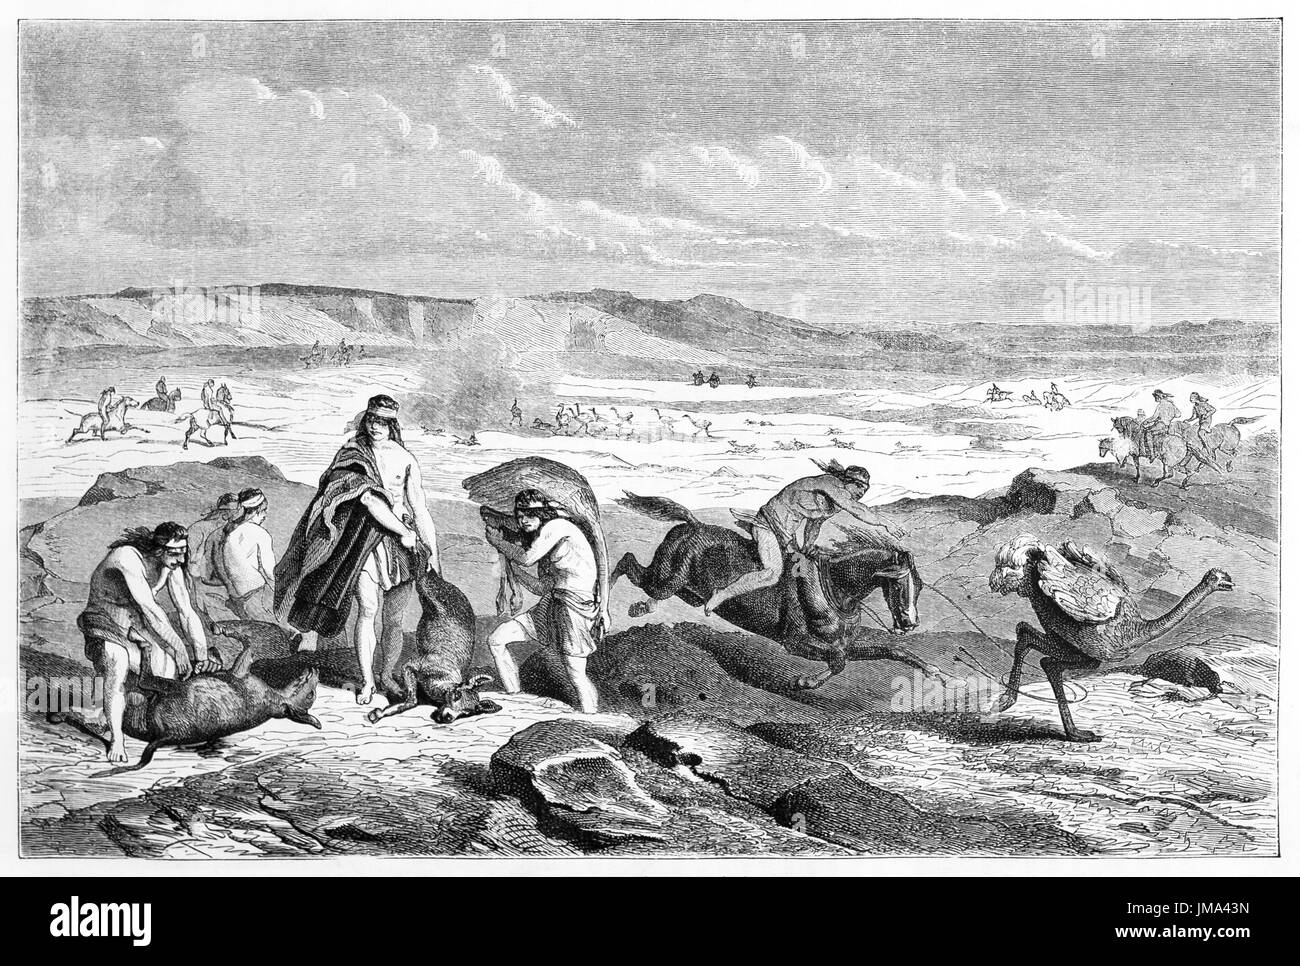 Indigènes patagoniens chassant des animaux sauvages à cheval et à pied sur un terrain plat rocheux. Art de style gravure en tons gris par Castelli, le Tour du monde, 1861 Banque D'Images